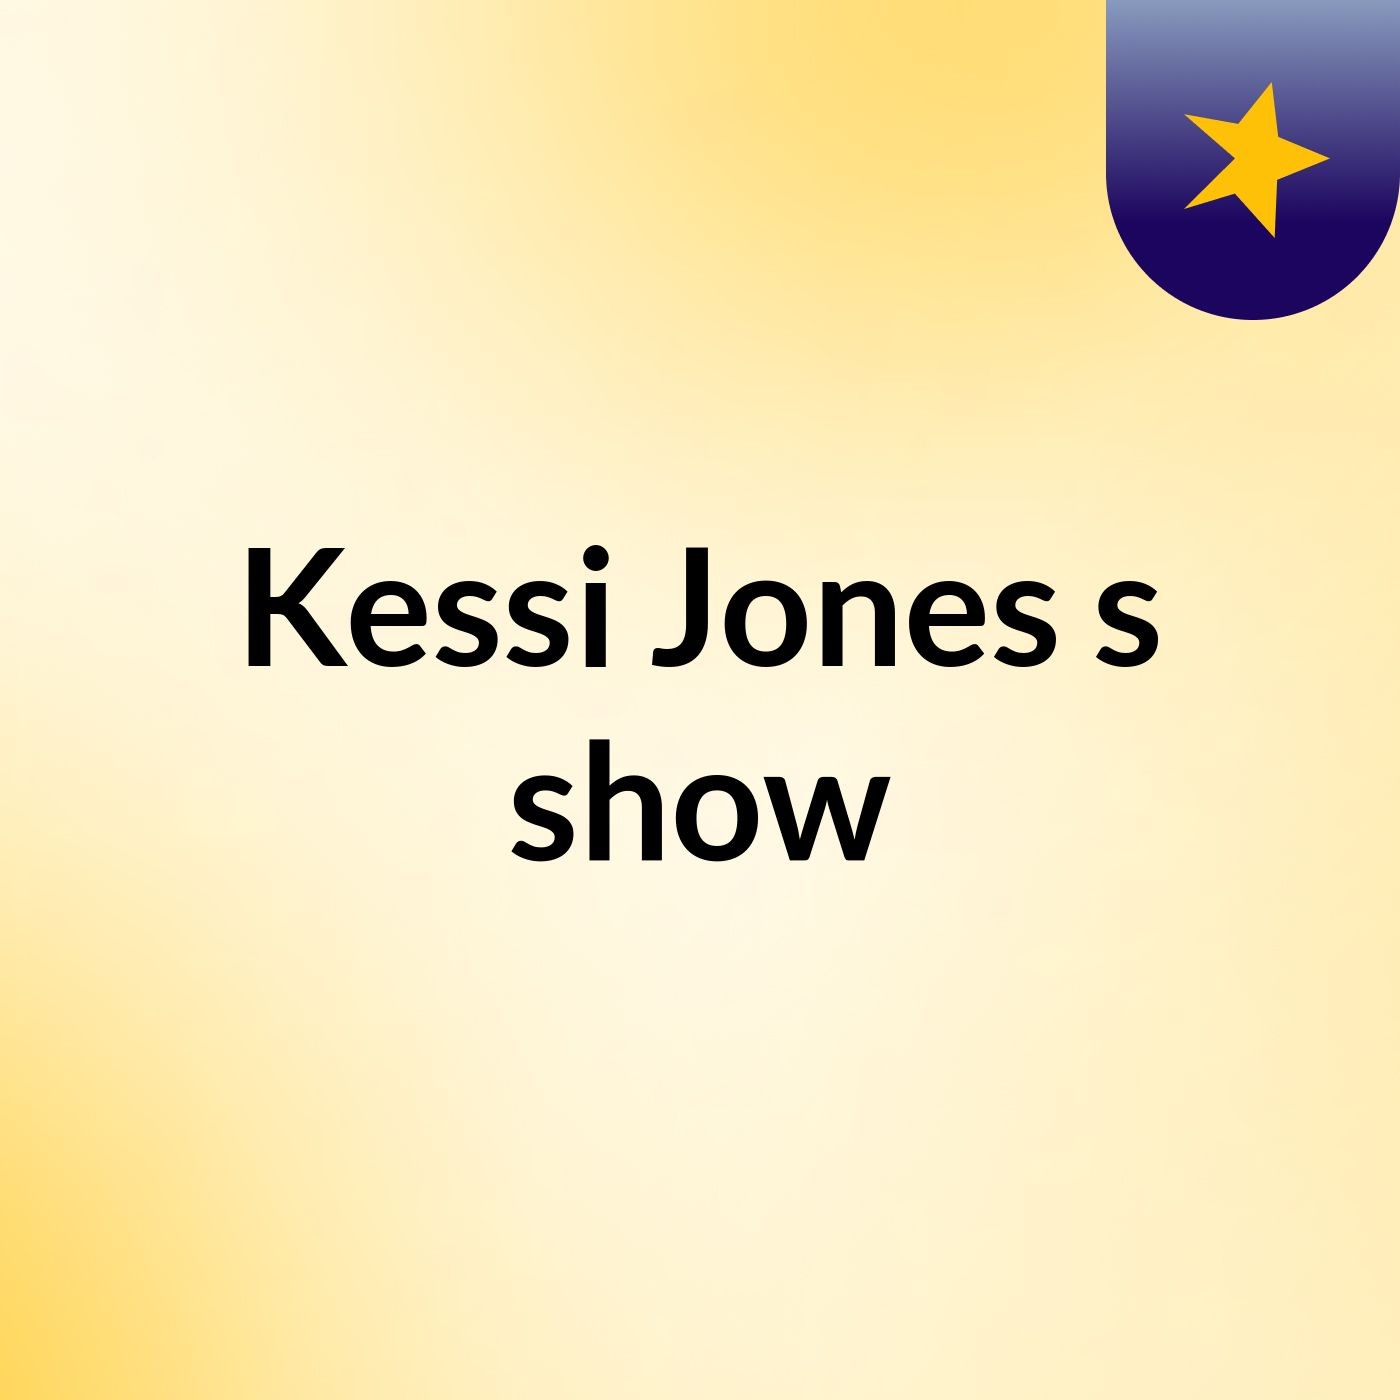 Kessi Jones's show